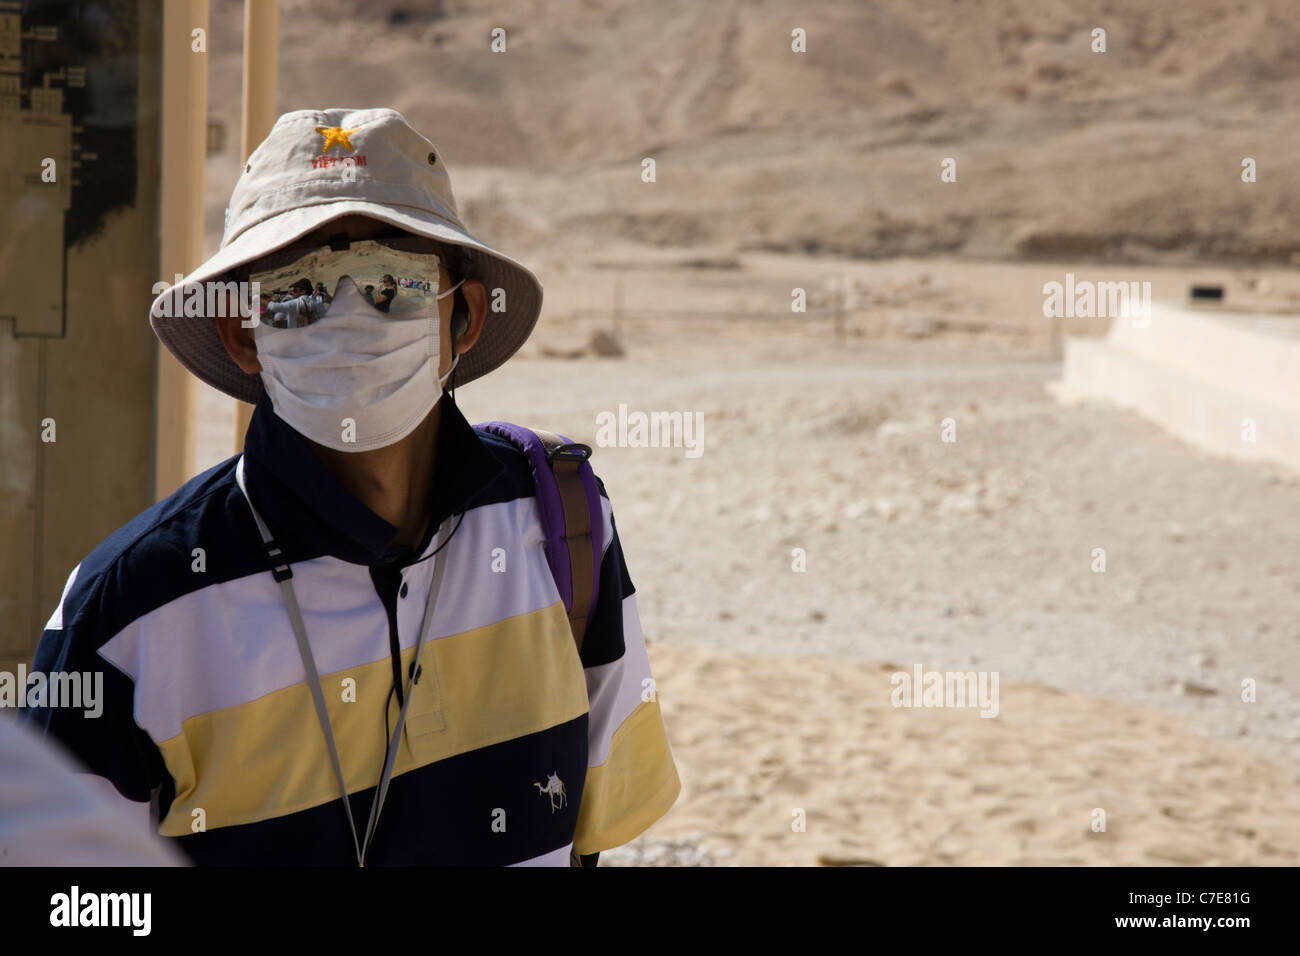 Ein japanischer Tourist mit Gesichtsmaske am Tempel der Hatschepsut, Luxor, Ägypten Stockfoto